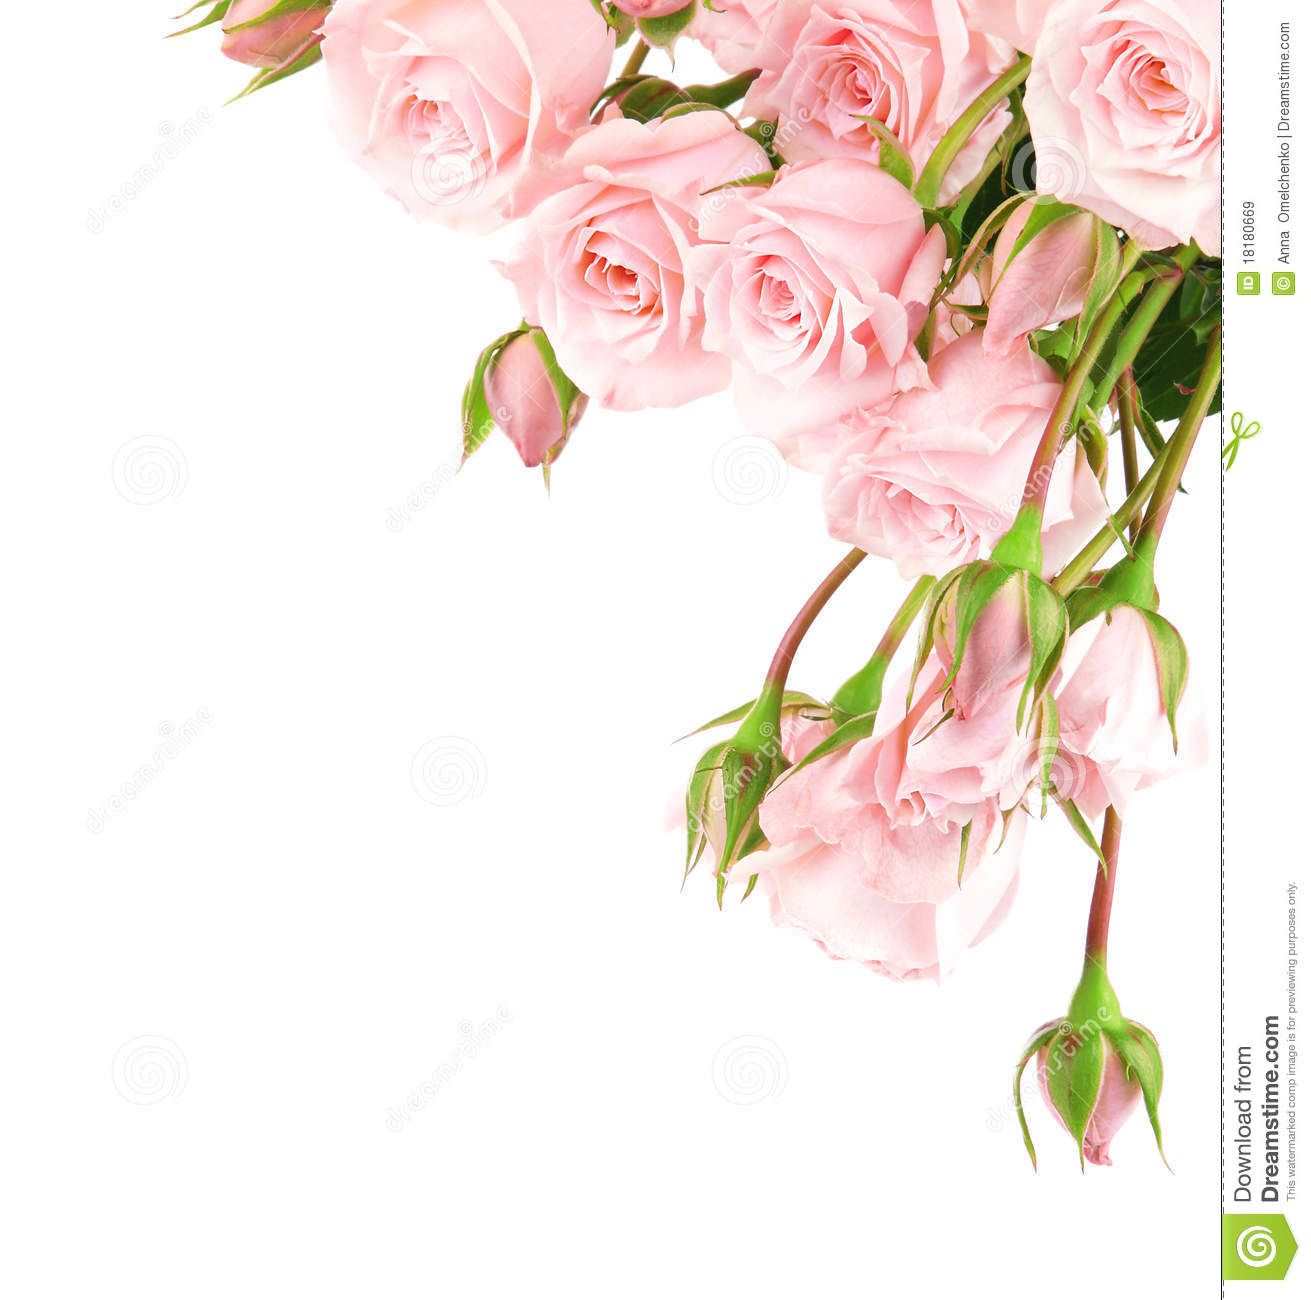 clipart flowers border rose